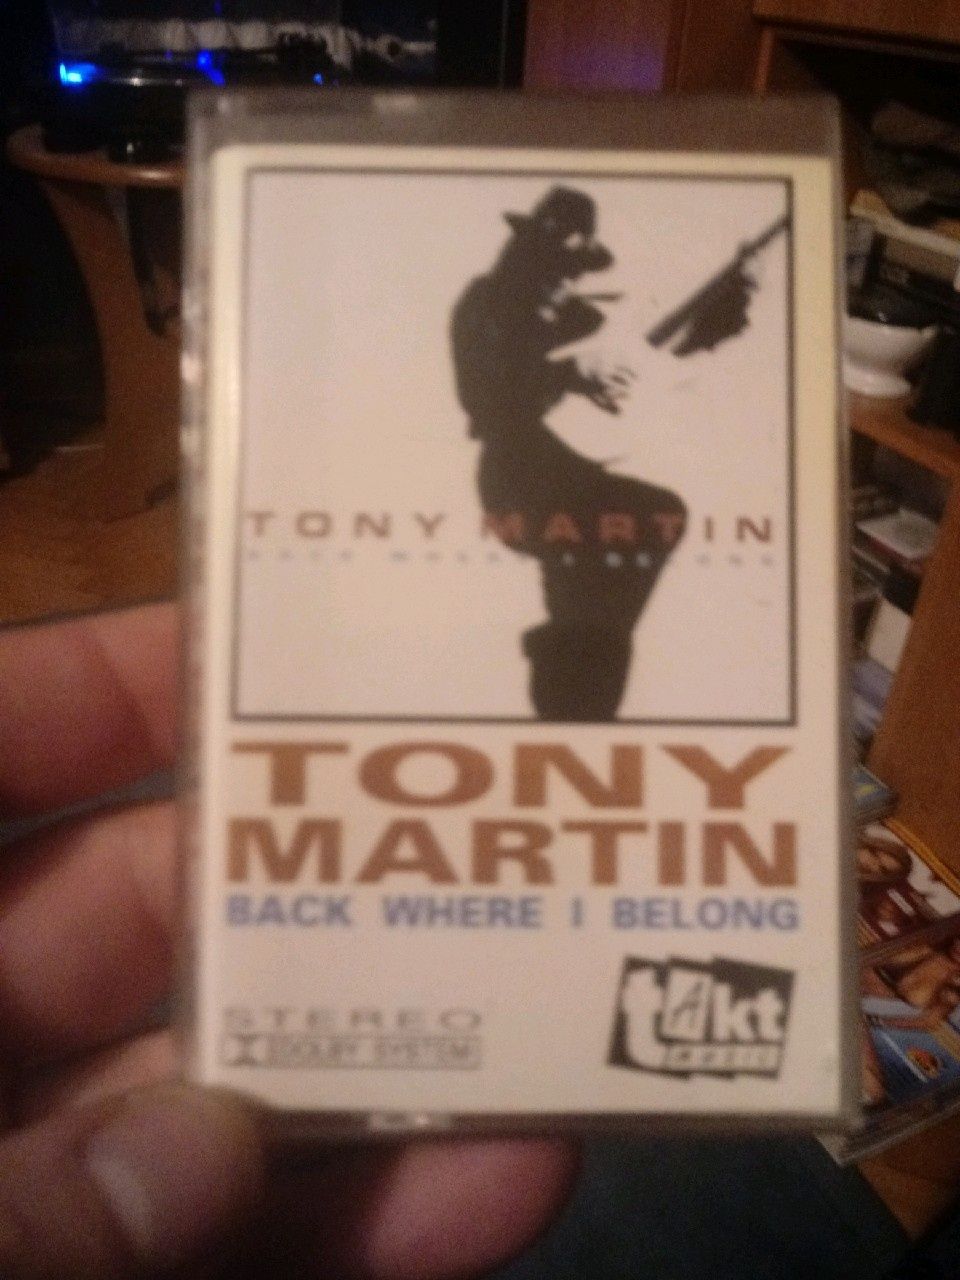 Tony Martin kaseta